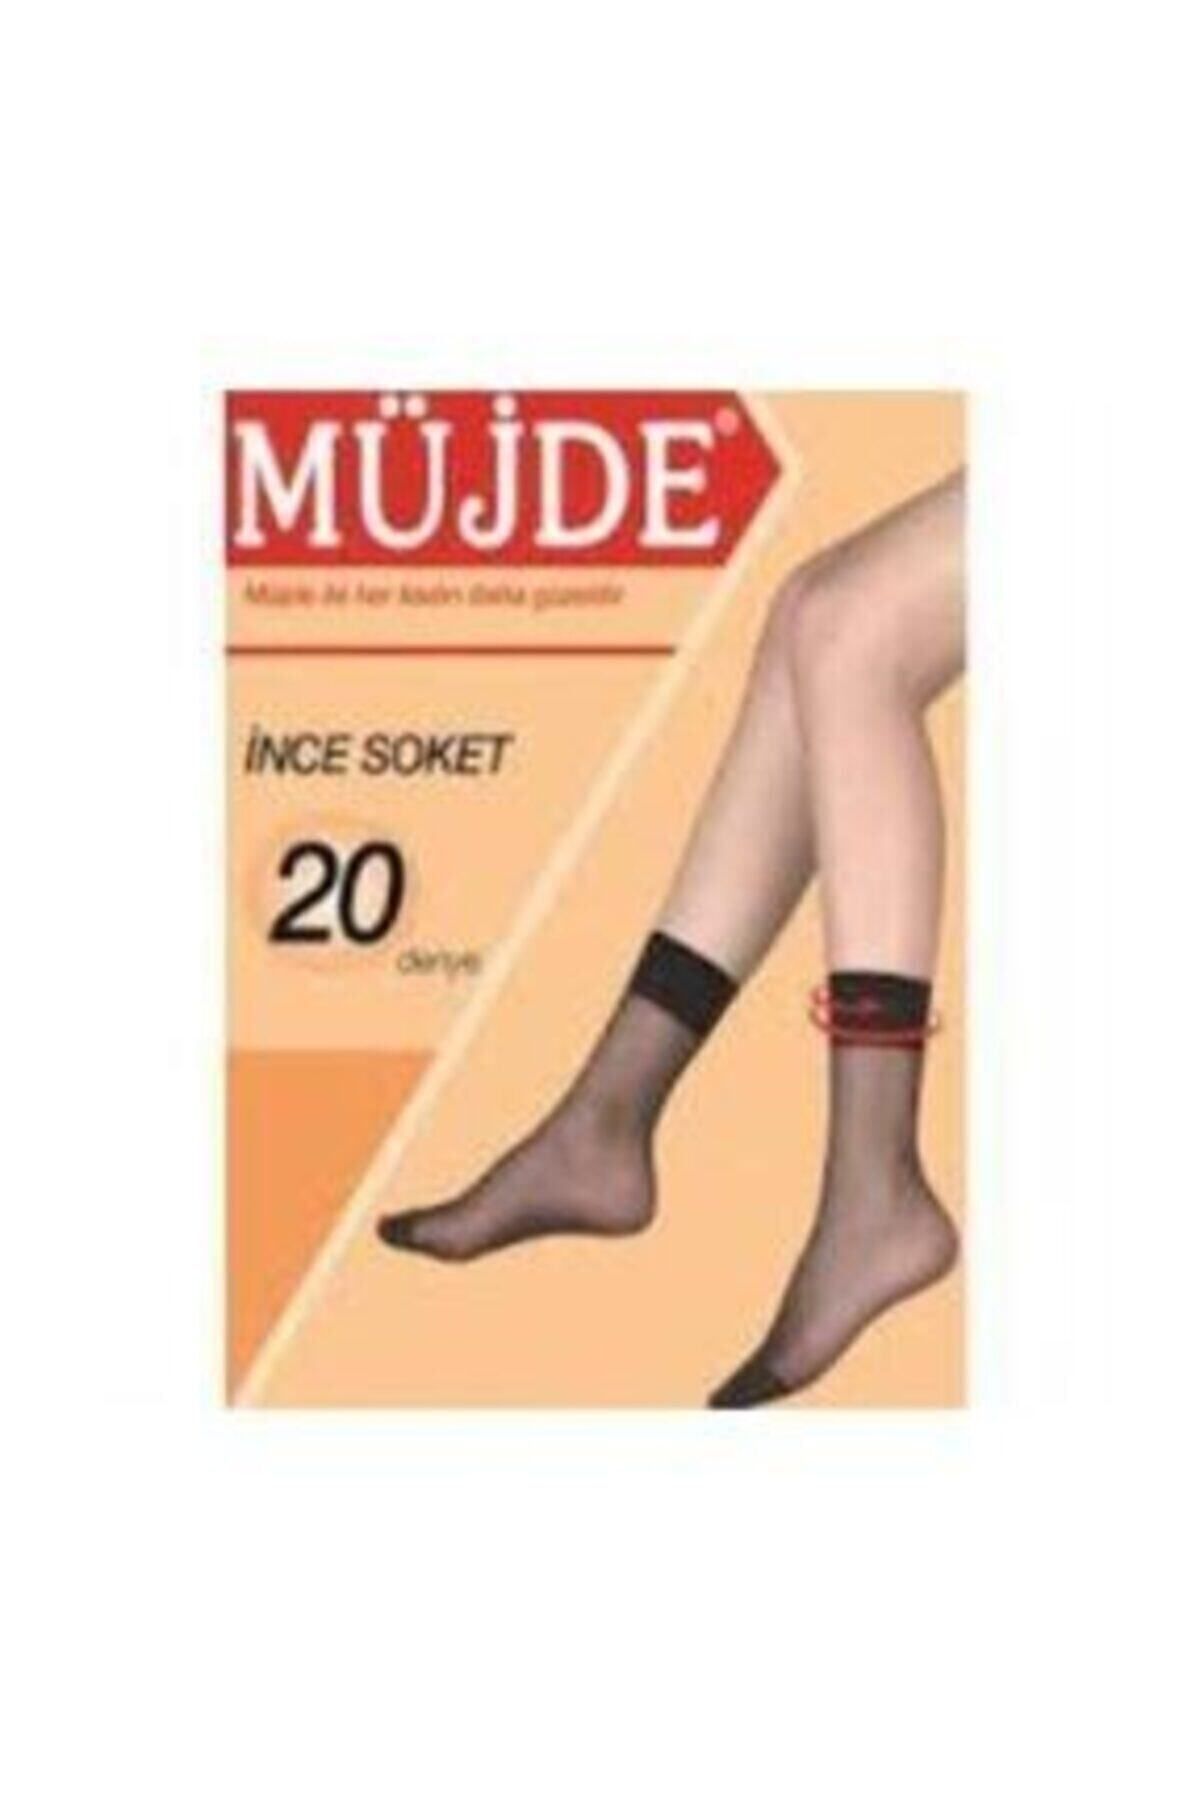 Müjde Ince Soket Corap 6'lı Paket 57 Ten Rengi ( 6 Adet ) Soket Kısa Pantolon Çorap , Çorabı